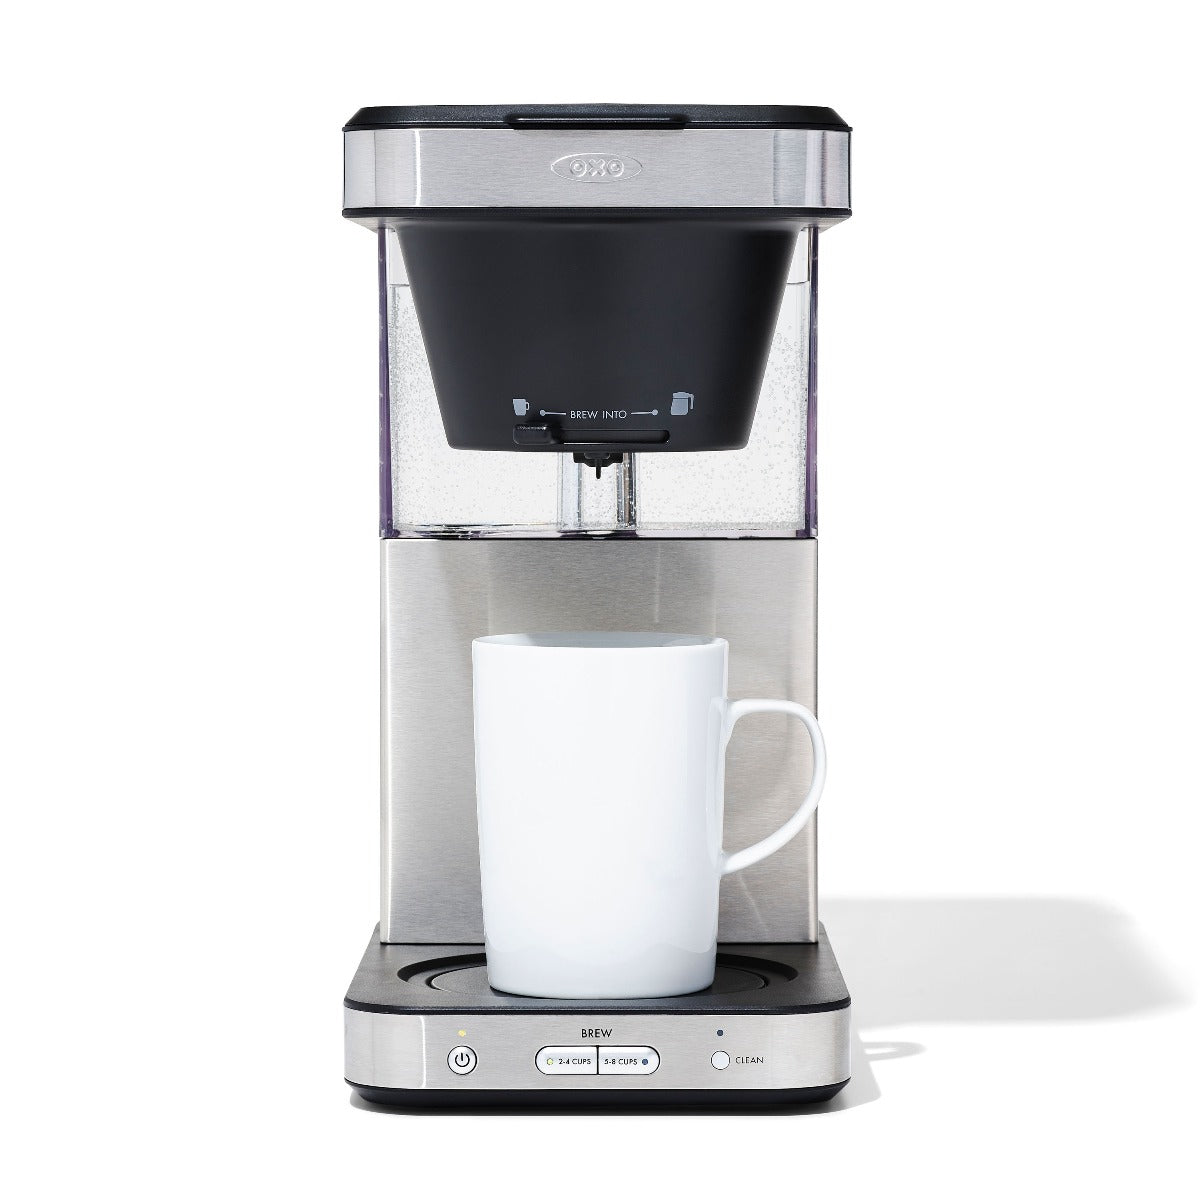 OXO BARISTA BRAIN 9-CUP COFFEE MAKER - BLACK/SILVER